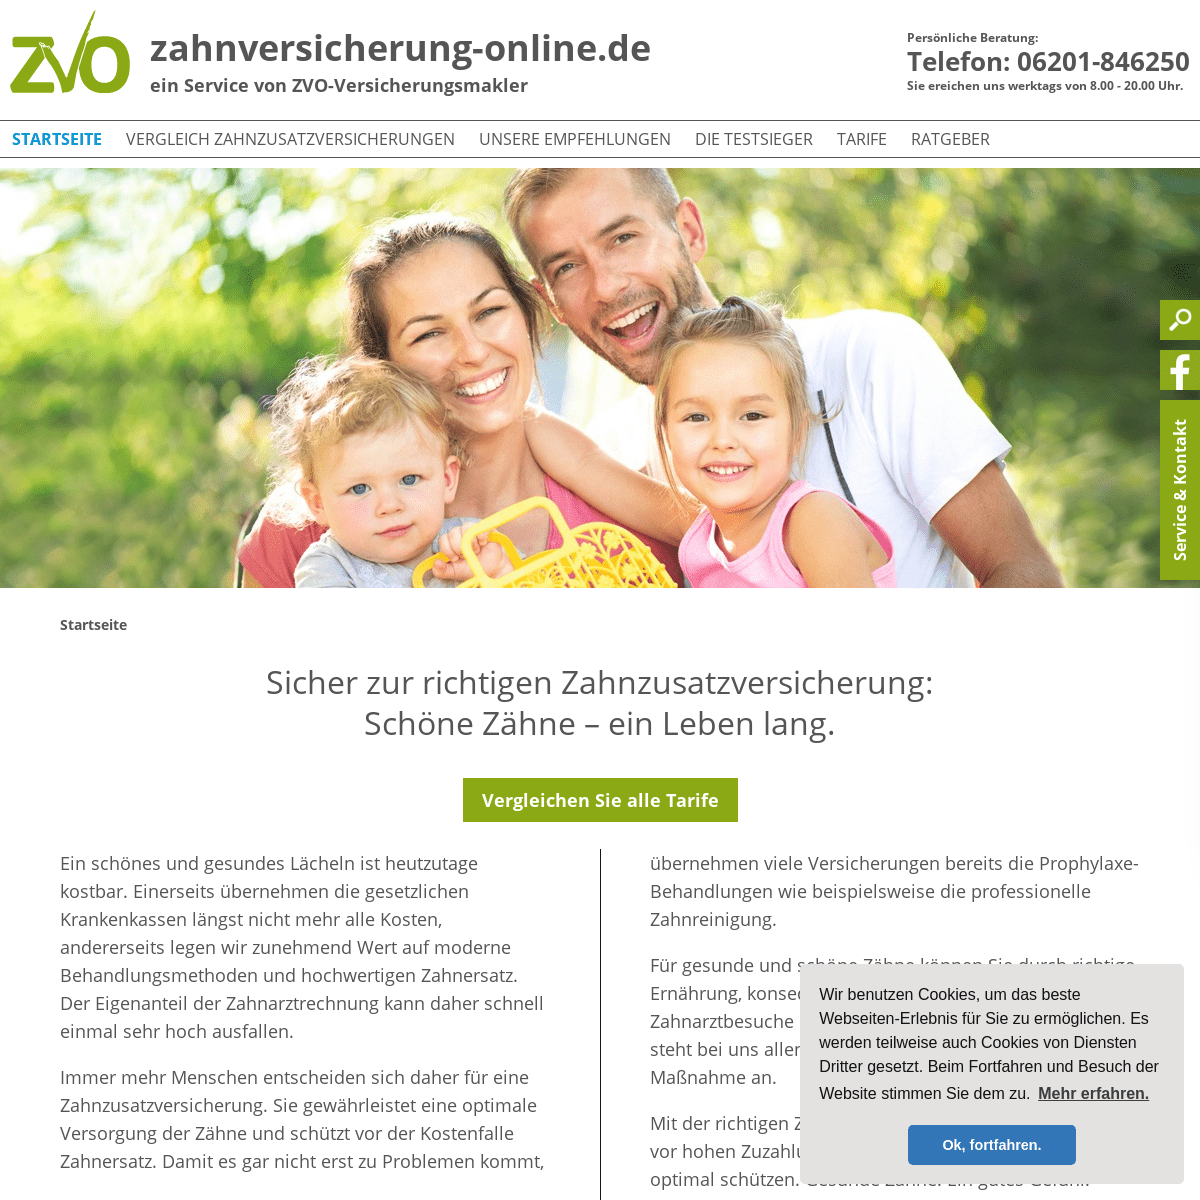 A complete backup of zahnversicherung-online.de